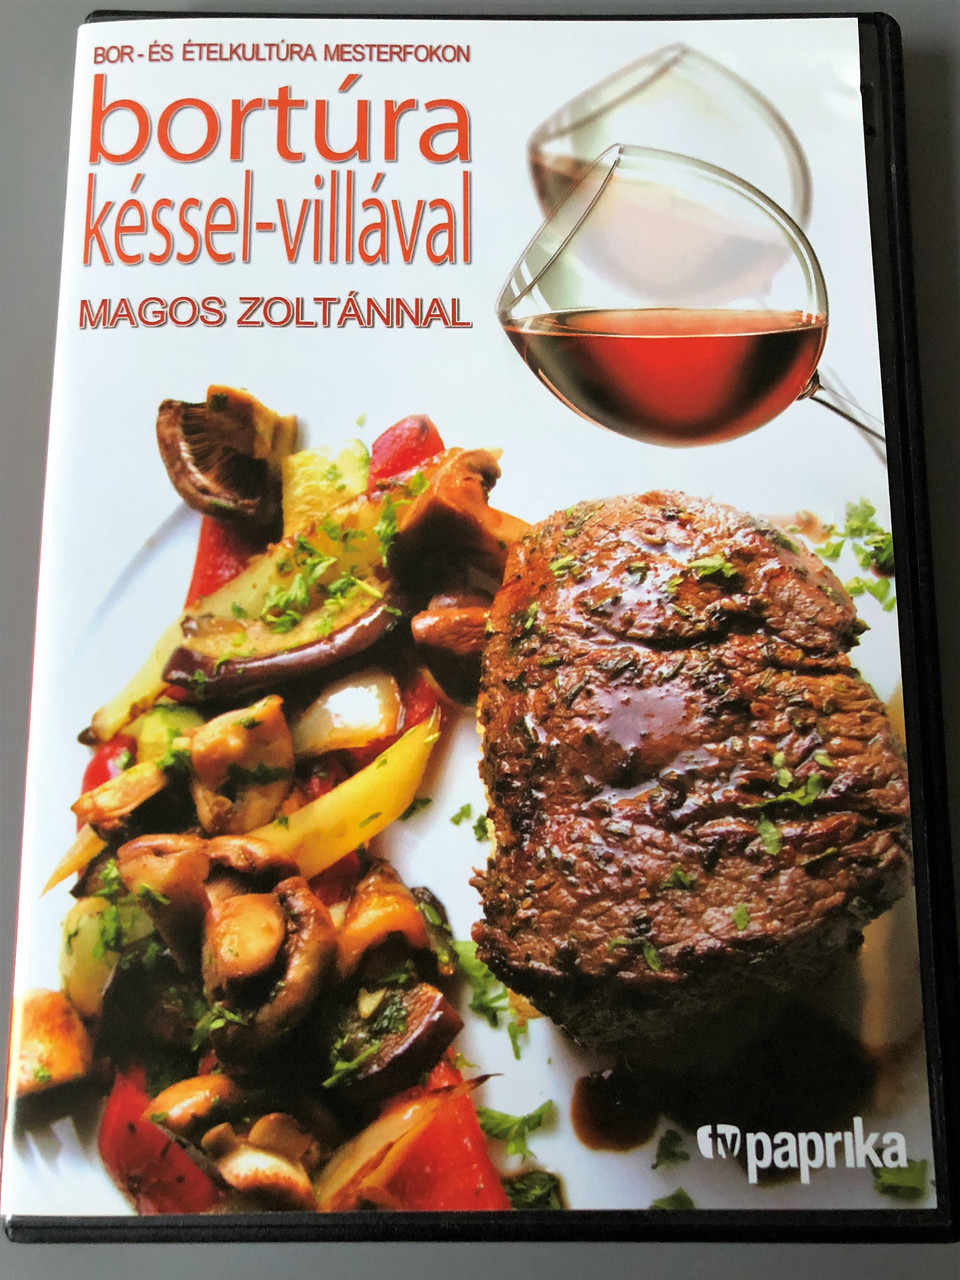 Bortúra késsel-villával - Magos Zoltánnal DVD / Bor- és Ételkultúra  Mesterfokon / Recipes, Wine and cooking in Hungary / TV Paprika -  bibleinmylanguage